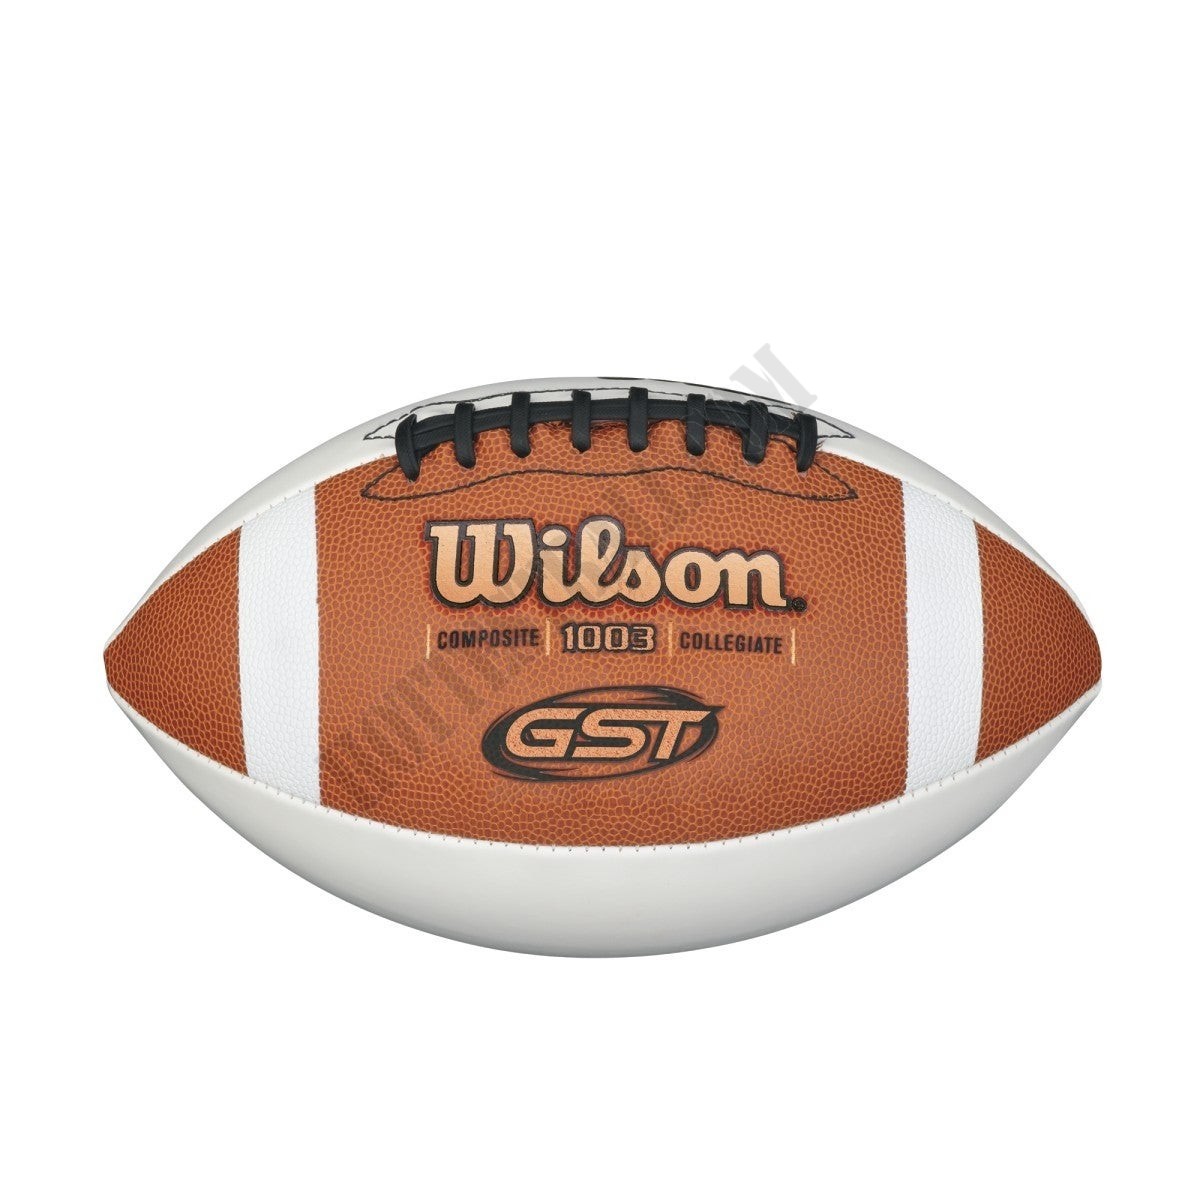 GST Autograph Composite Football - Official Size - Wilson Discount Store - GST Autograph Composite Football - Official Size - Wilson Discount Store